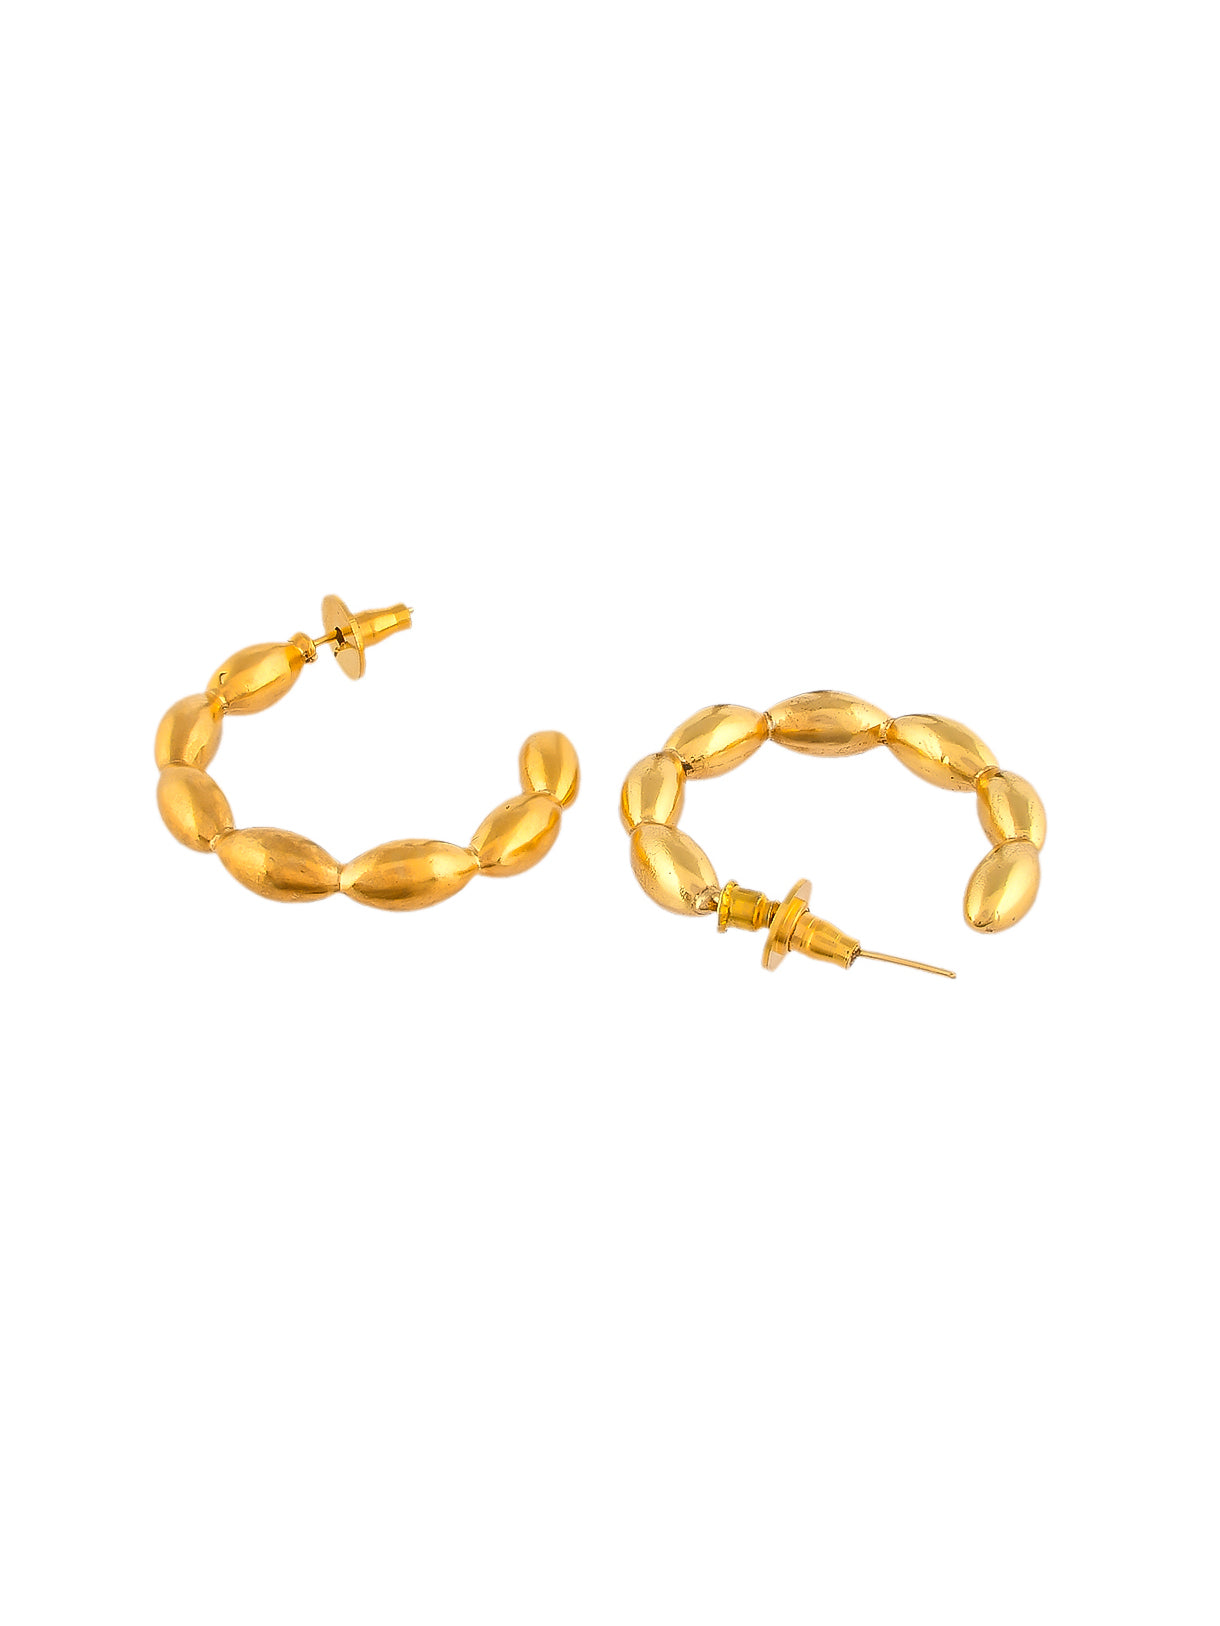 Handcrafted Gold Plated Half Hoop earrings